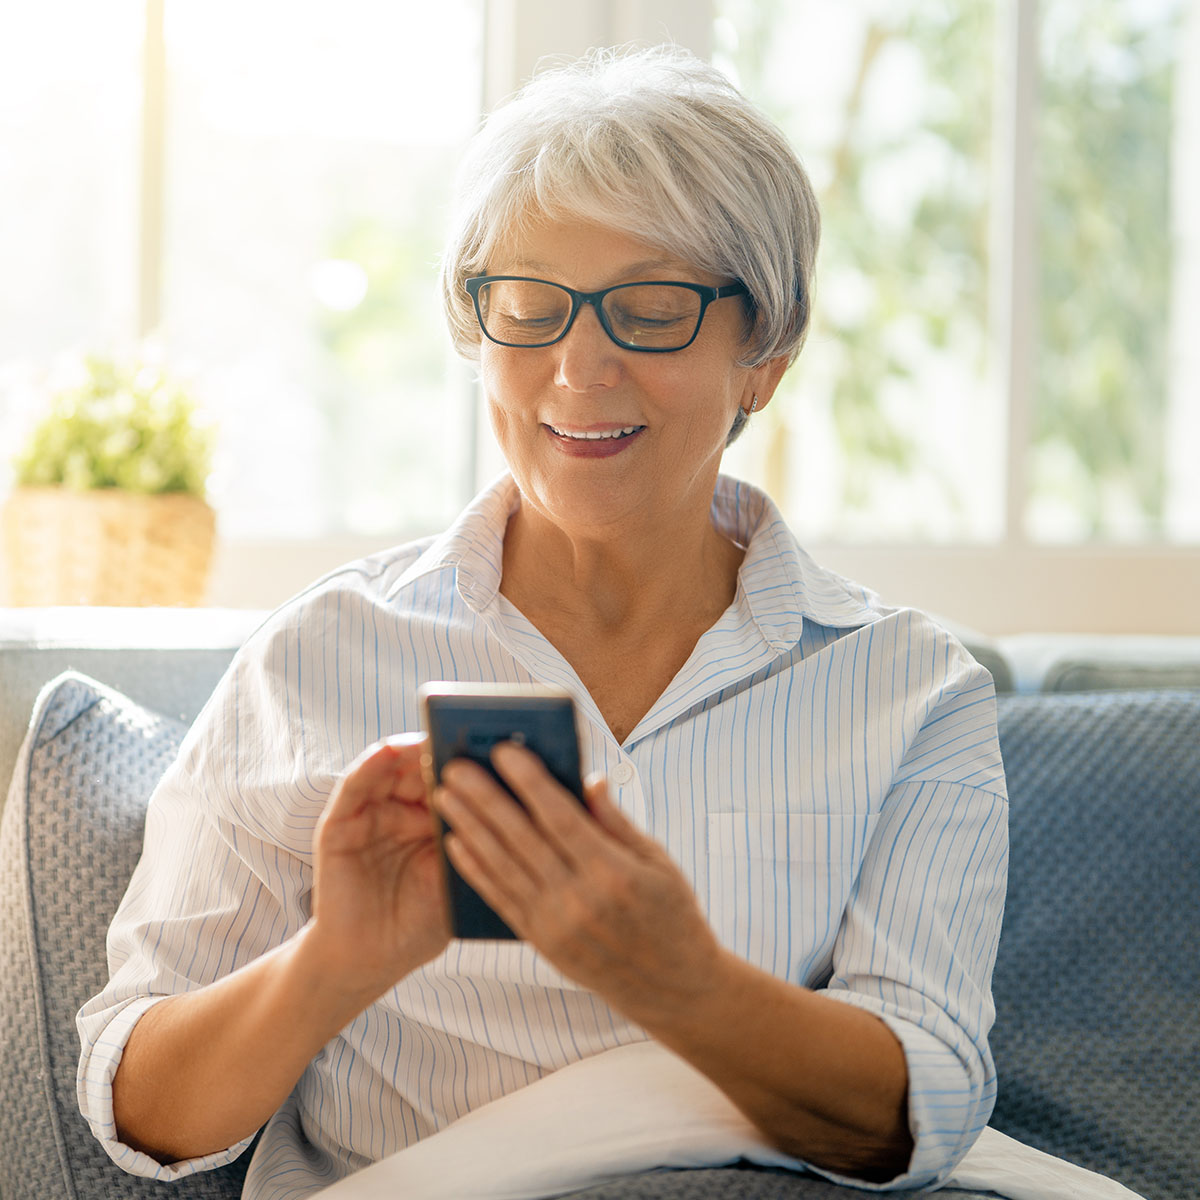 Una mujer sonríe mientras usa una aplicación en su smartphone.